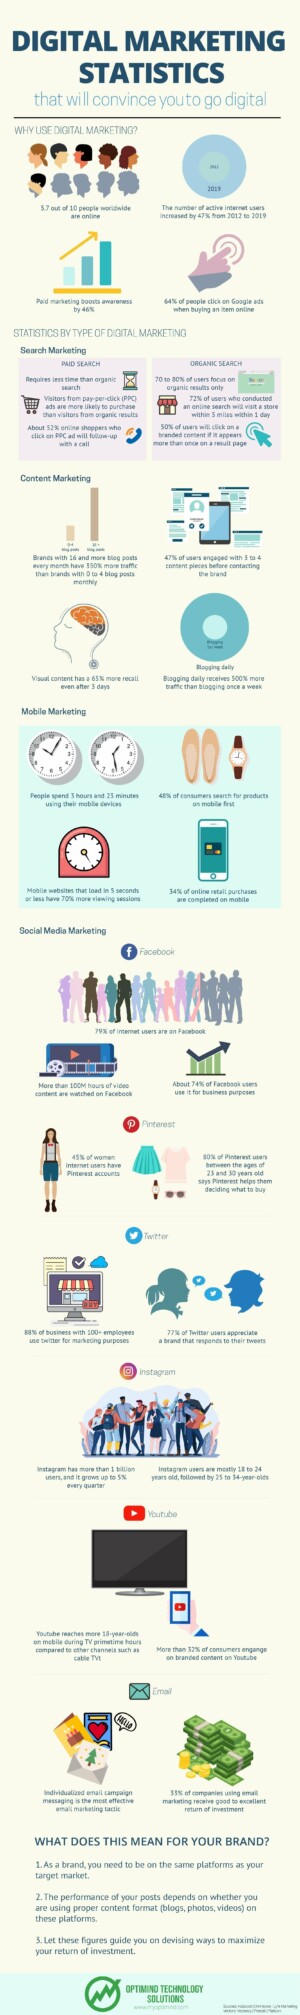 Digital Marketing Statistics 2020